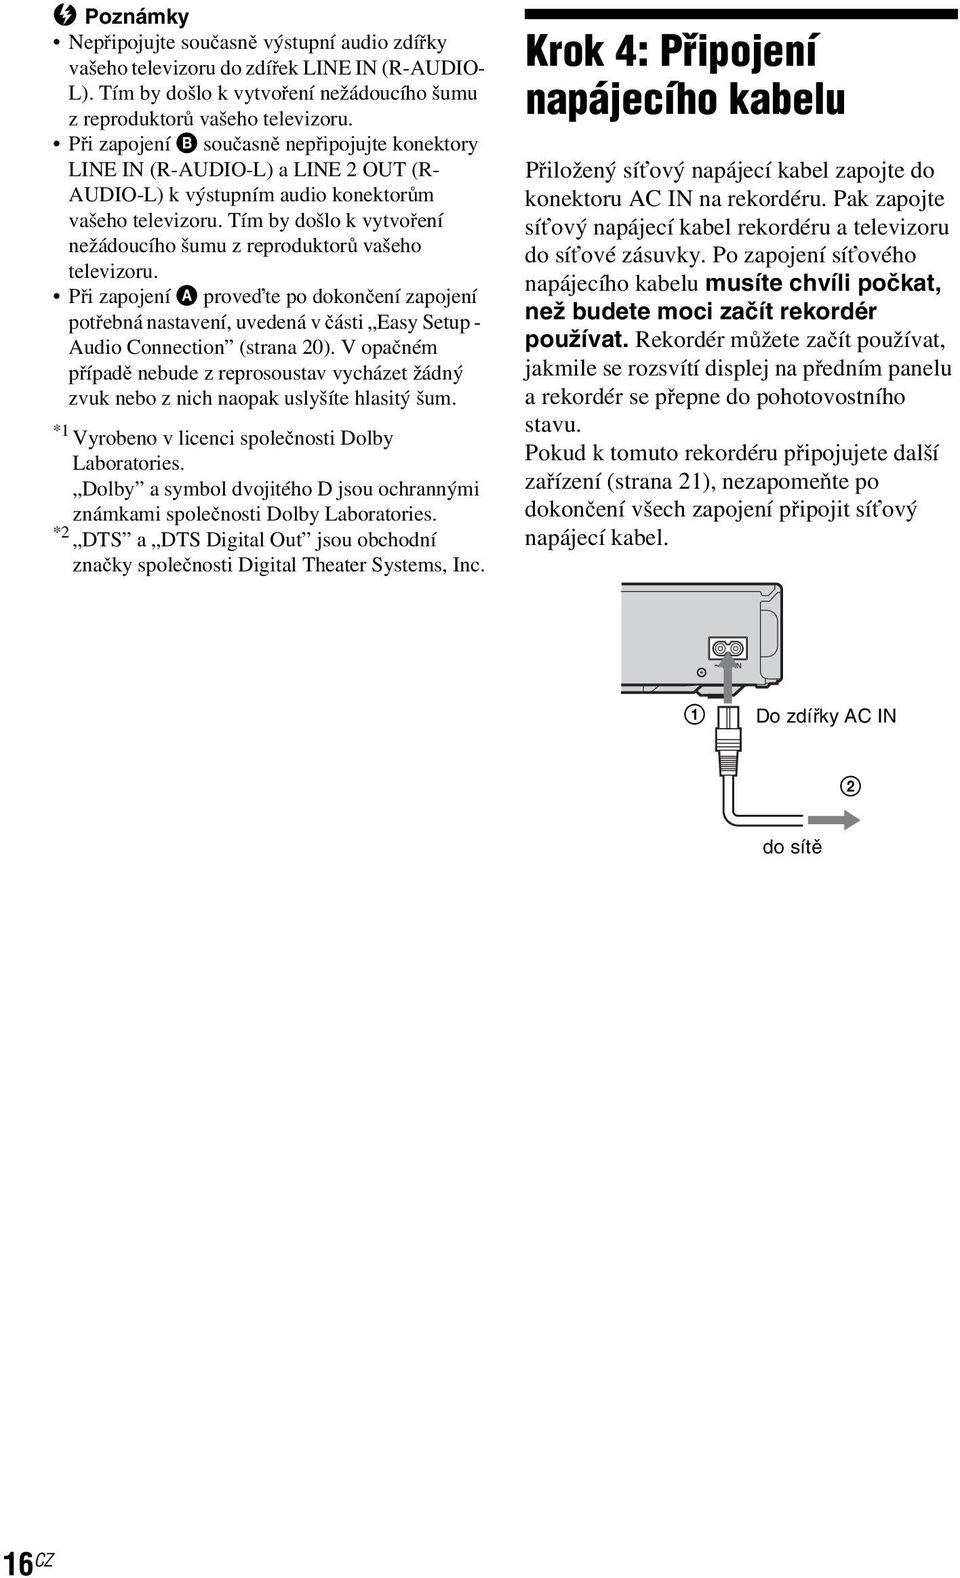 Tím by došlo k vytvoření nežádoucího šumu z reproduktorů vašeho televizoru. Při zapojení A proveďte po dokončení zapojení potřebná nastavení, uvedená v části Easy Setup - Audio Connection (strana 20).